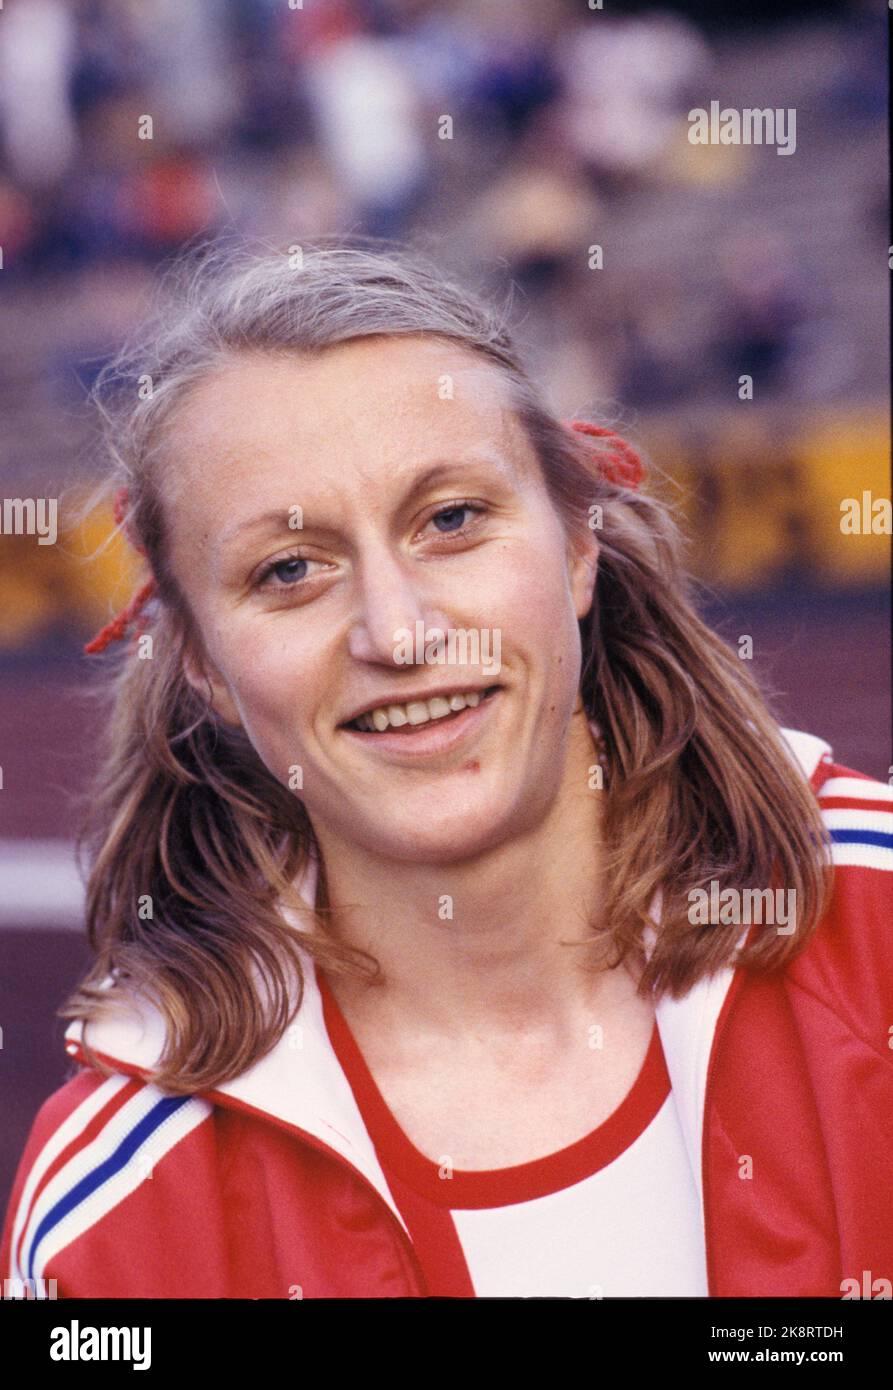 Oslo 19780807: Athlete Grete Waitz. Portrait with mouse braids, red jacket. Photo: Erik Thorberg / NTB / NTB Stock Photo